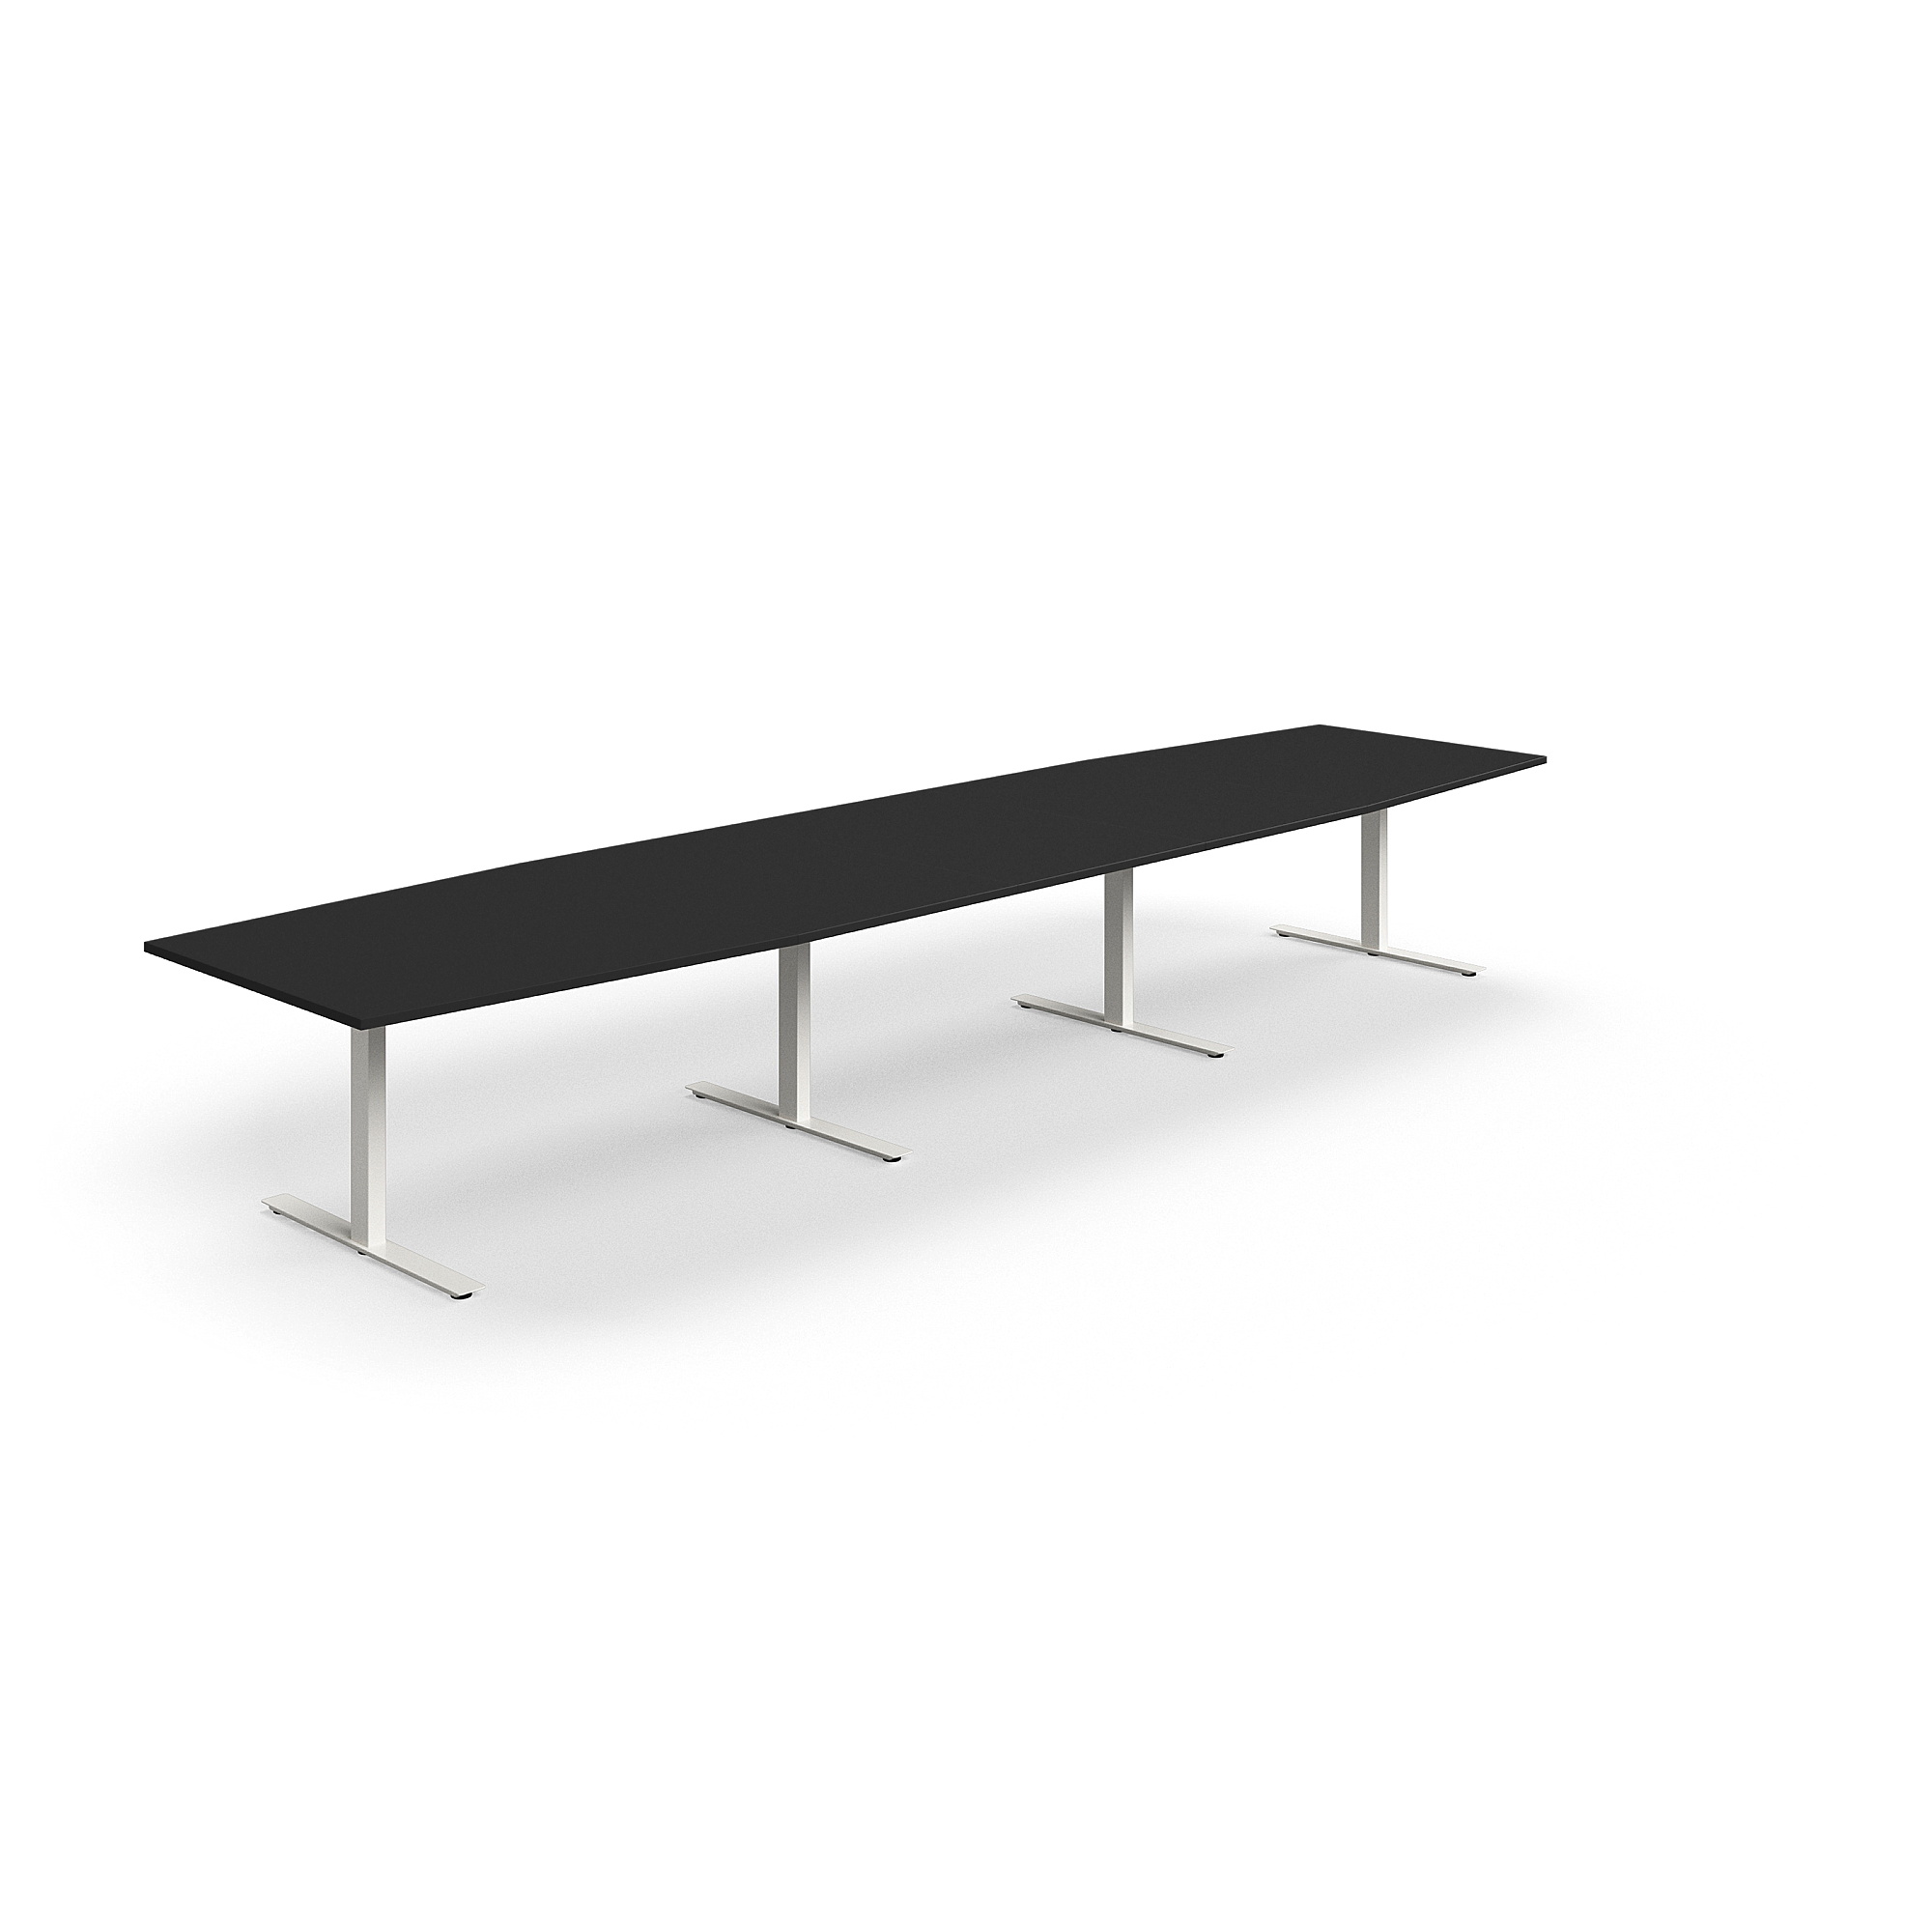 Jednací stůl QBUS, T-nohy, 4800x1200 mm, tvar člunu, bílá podnož, černá